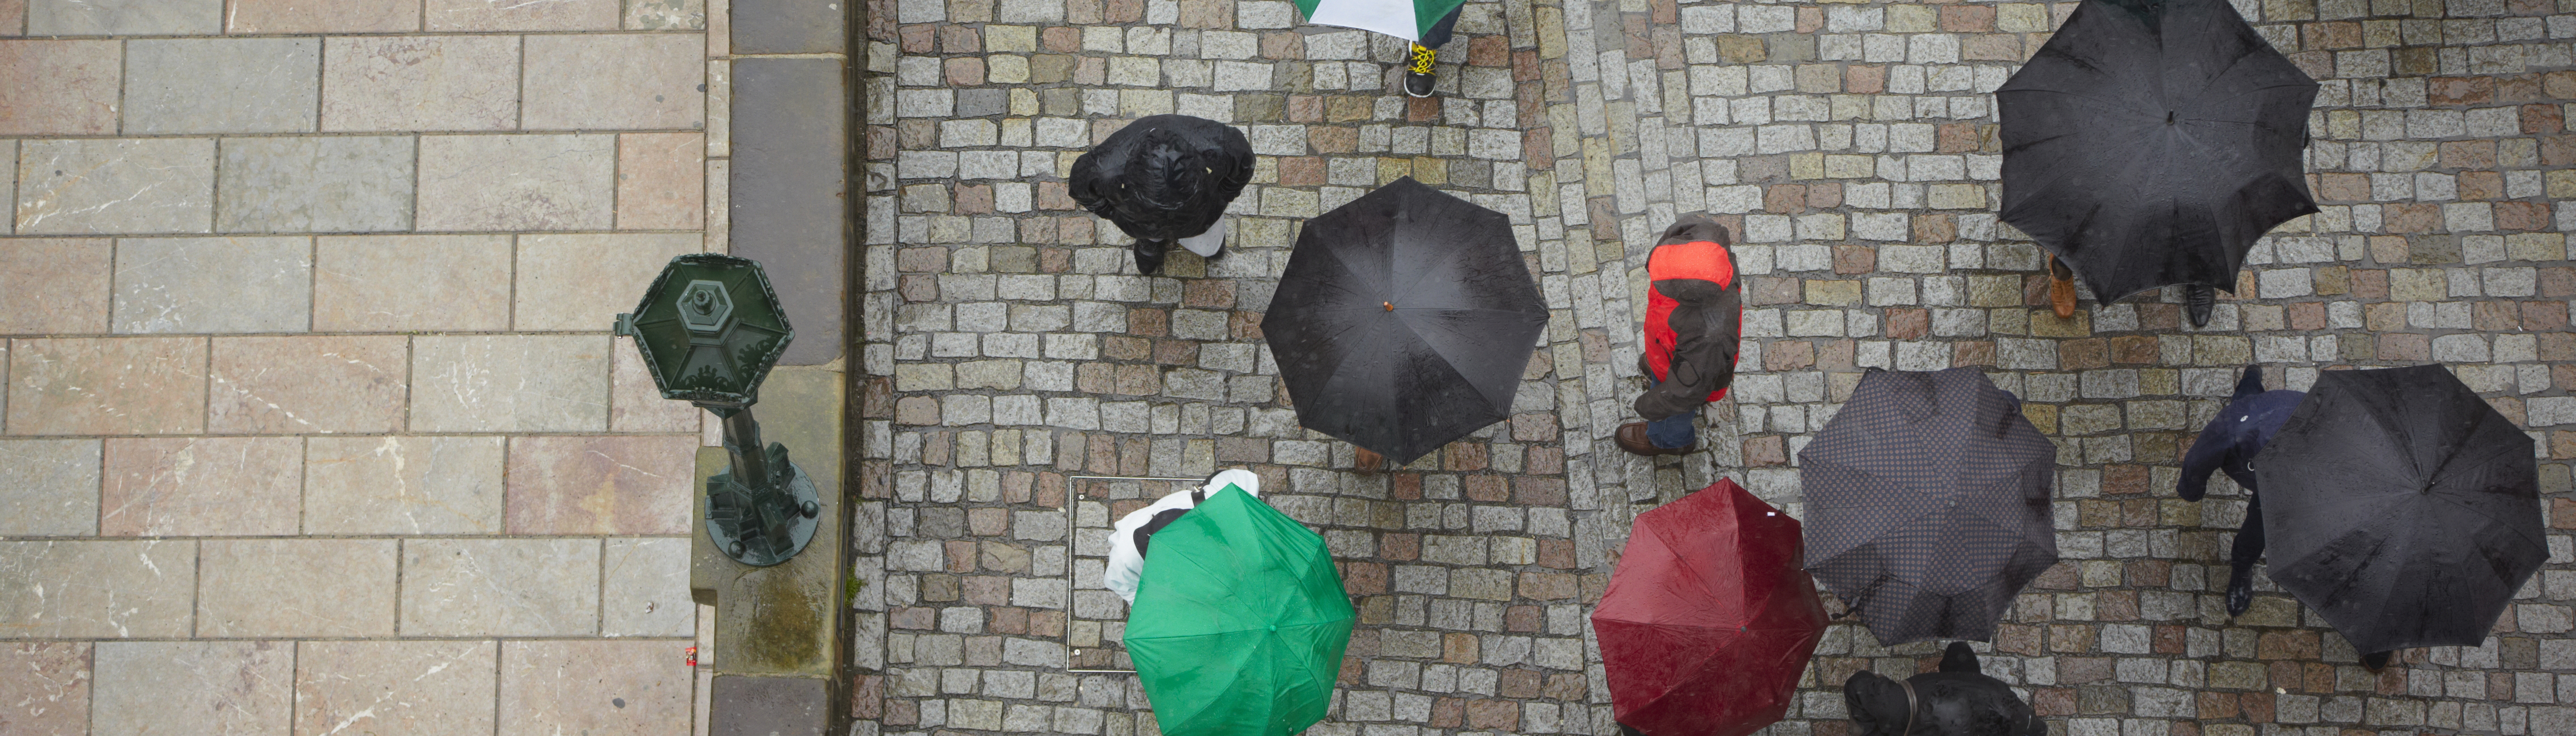 Bild tagen uppifrån på en gata med kullersten där det går folk med paraplyn.